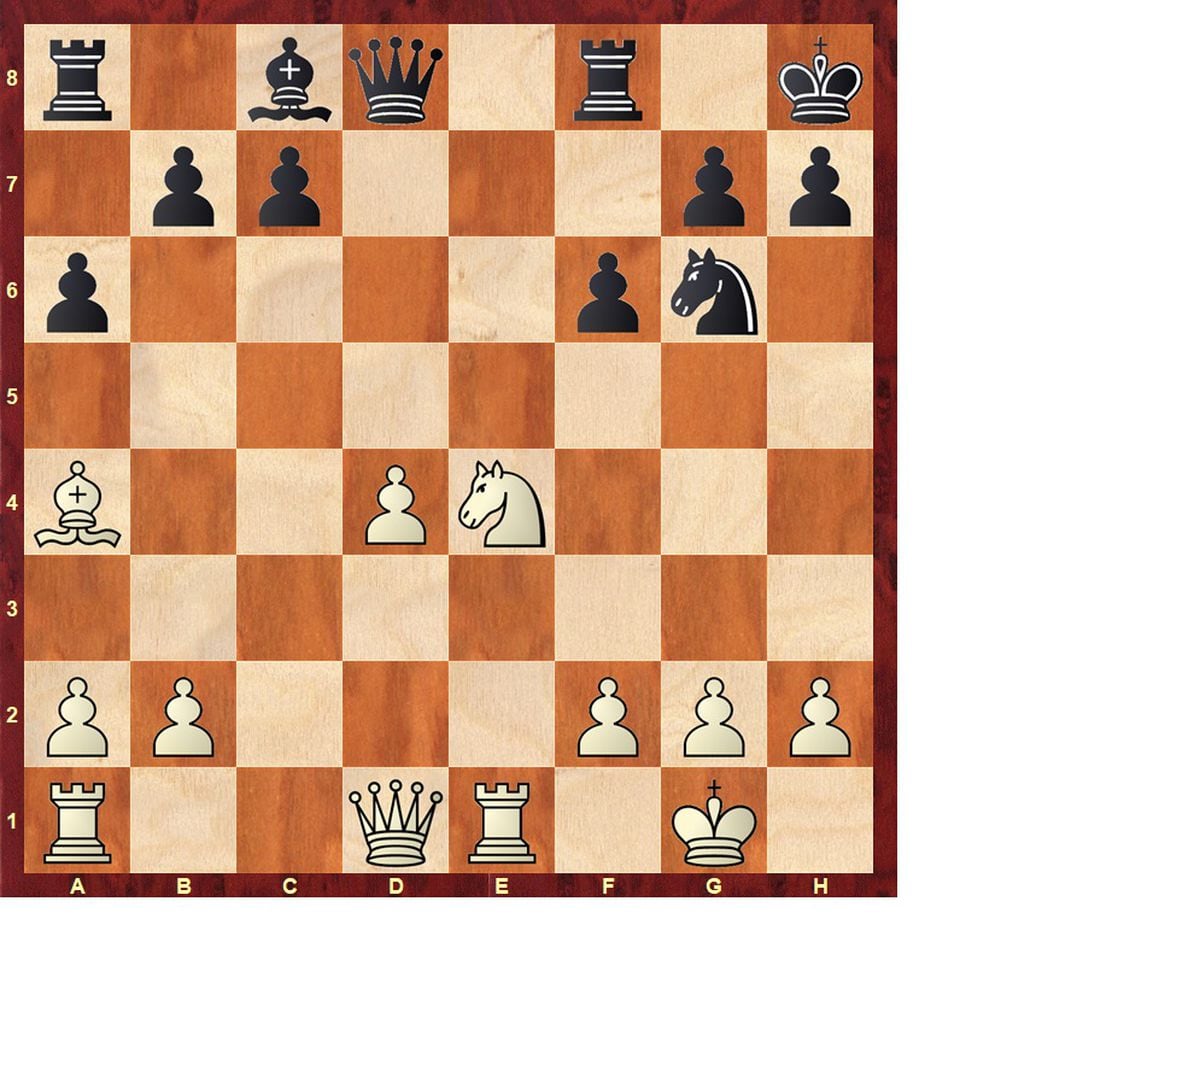 国际象棋候选人锦标赛：Niepómniashi 的巨大恐惧 |国际象棋游戏